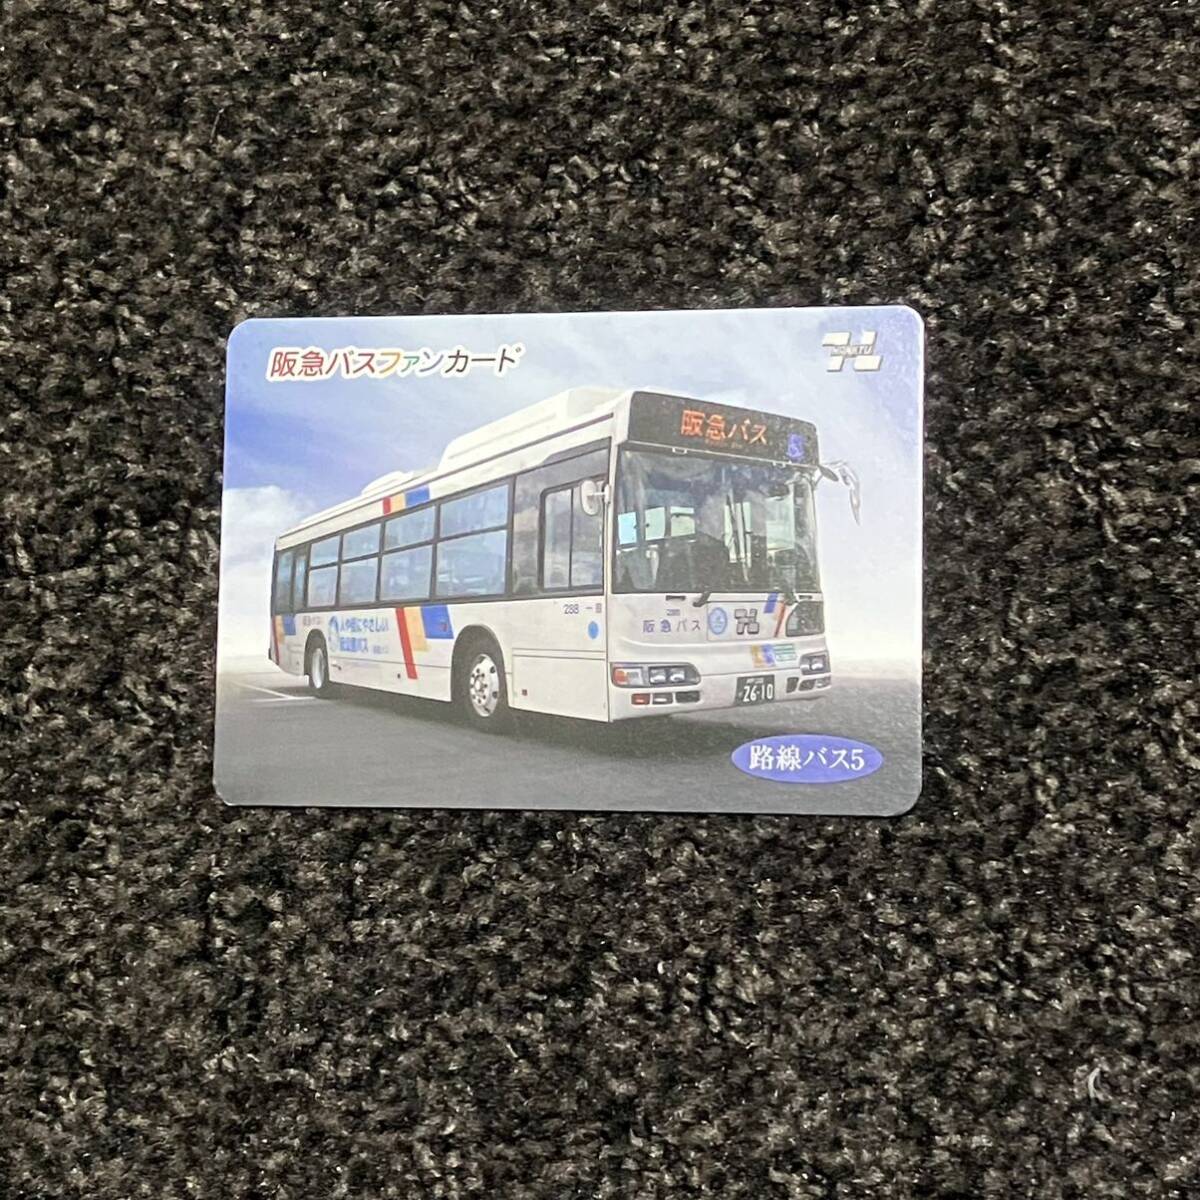  память bus card ④